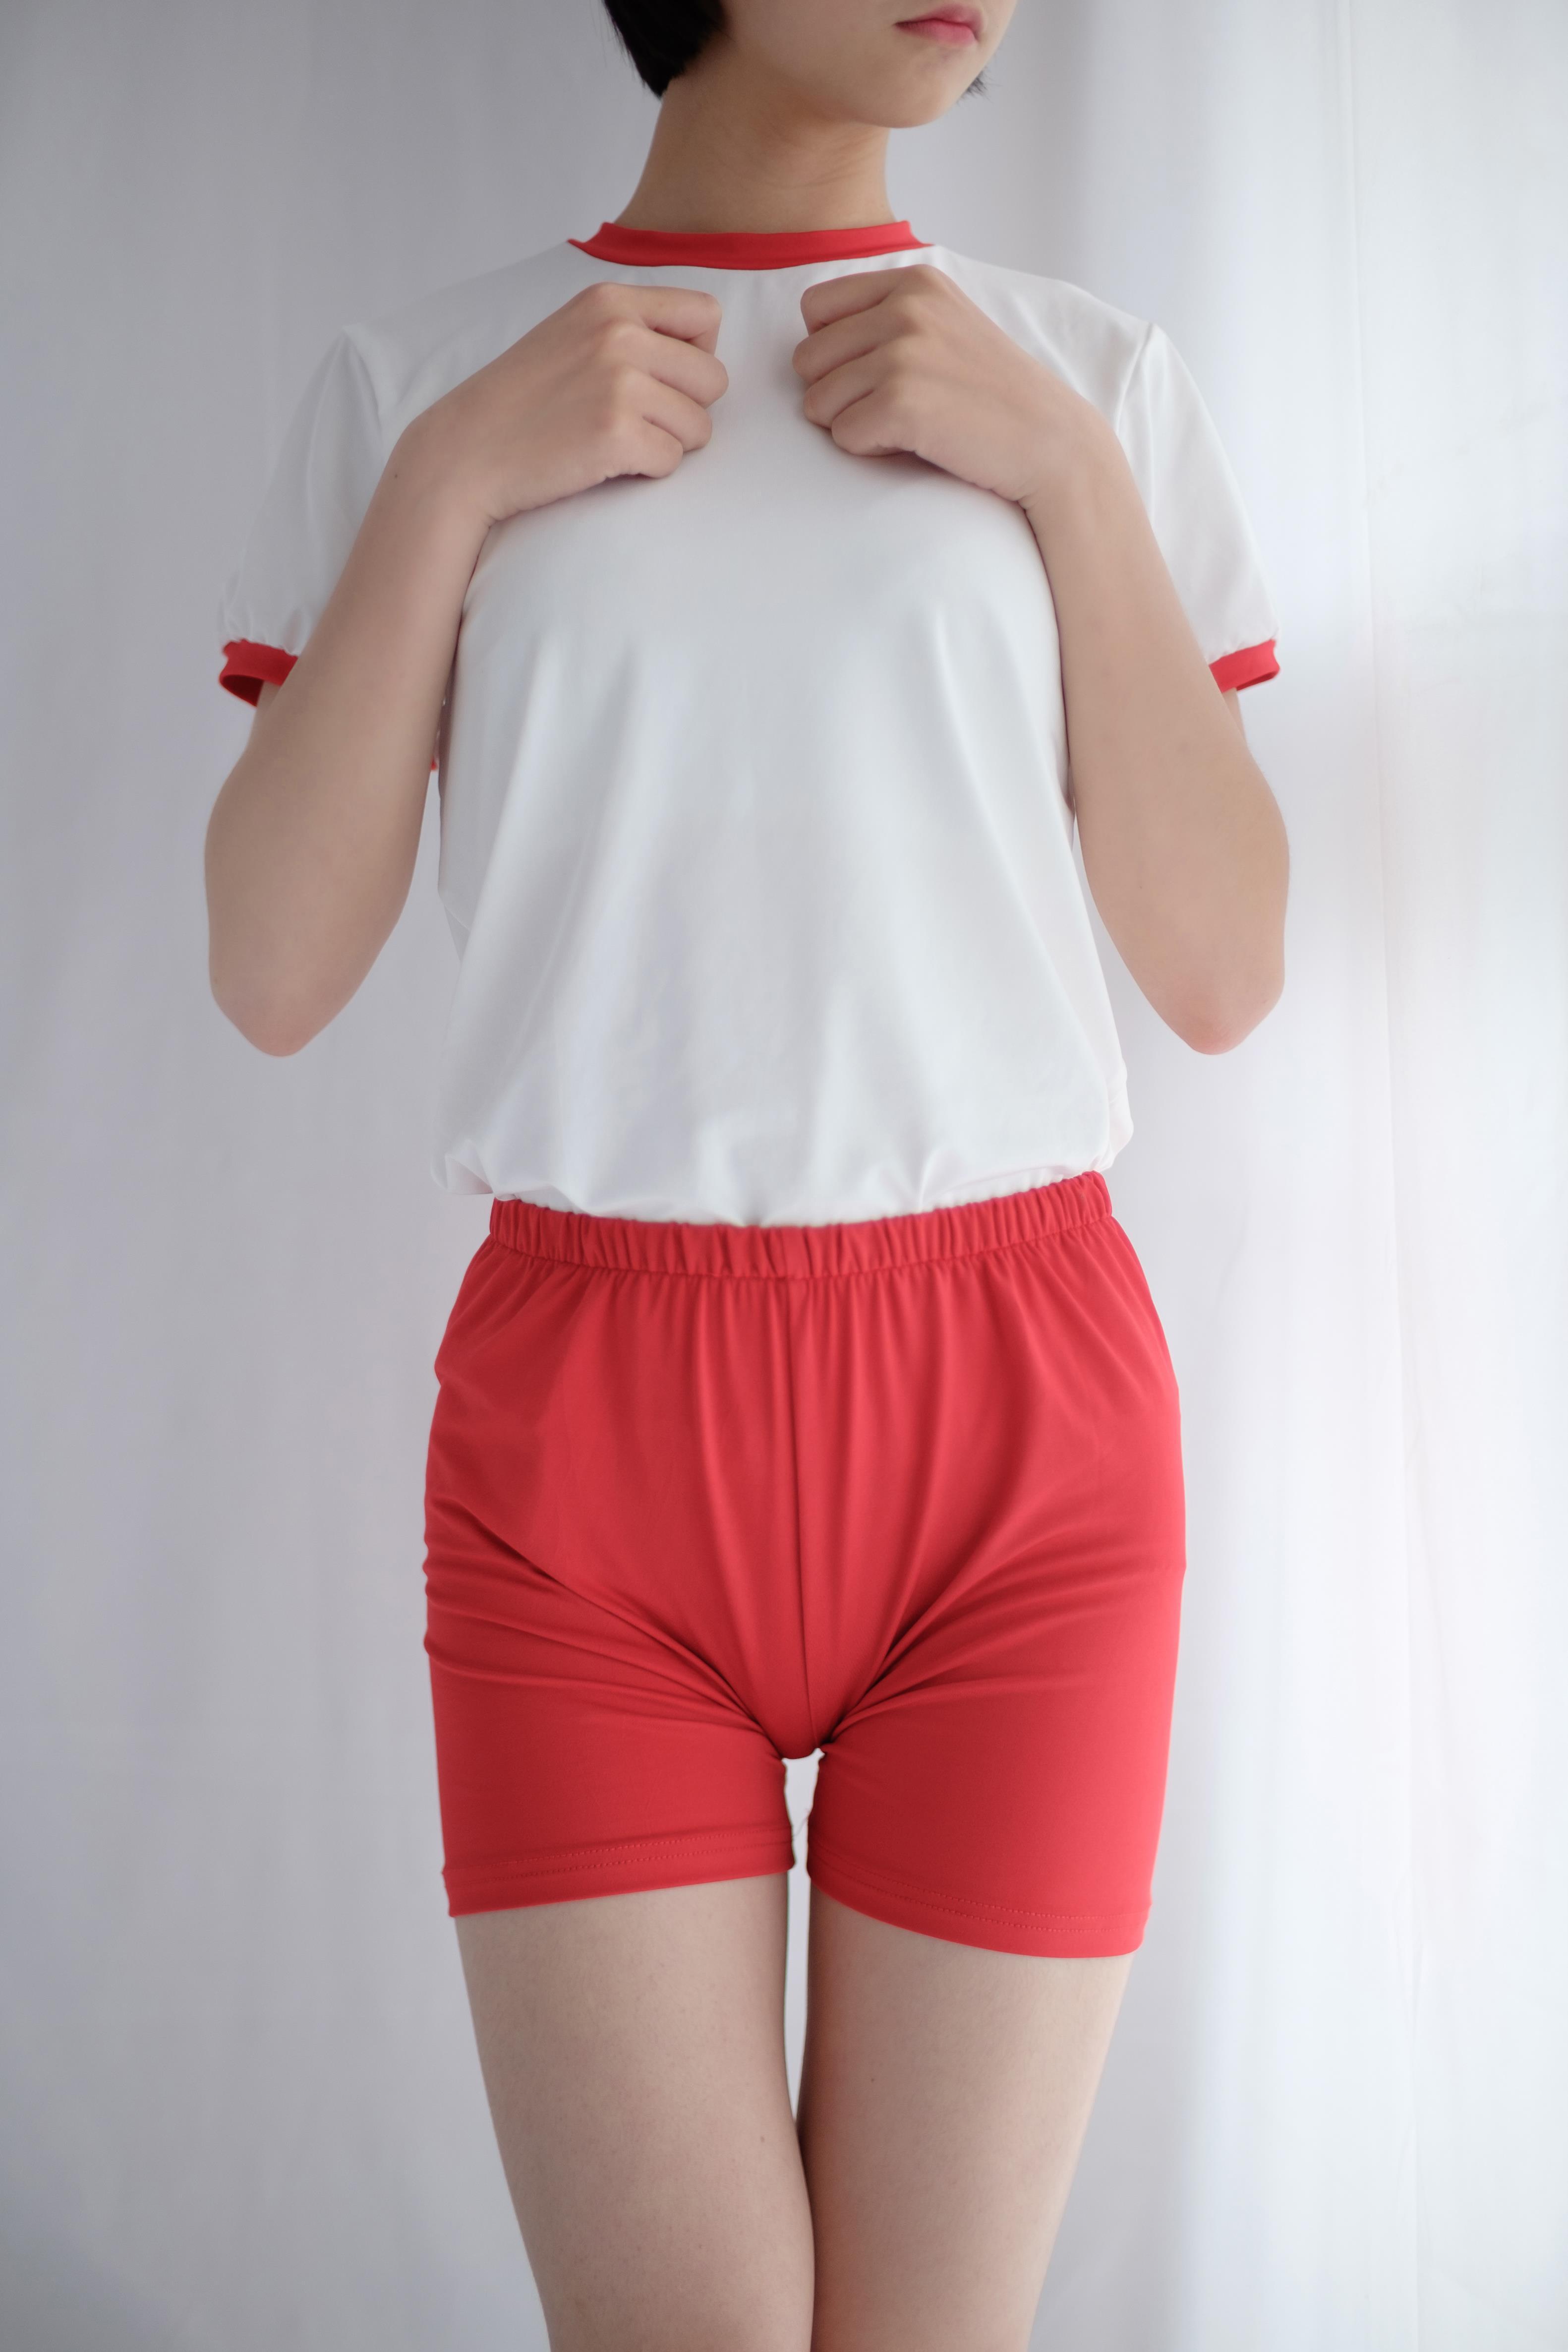 [森萝财团]萝莉R15-024 白色短袖与红色短裤加黑色丝袜美腿玉足性感私房写真集,